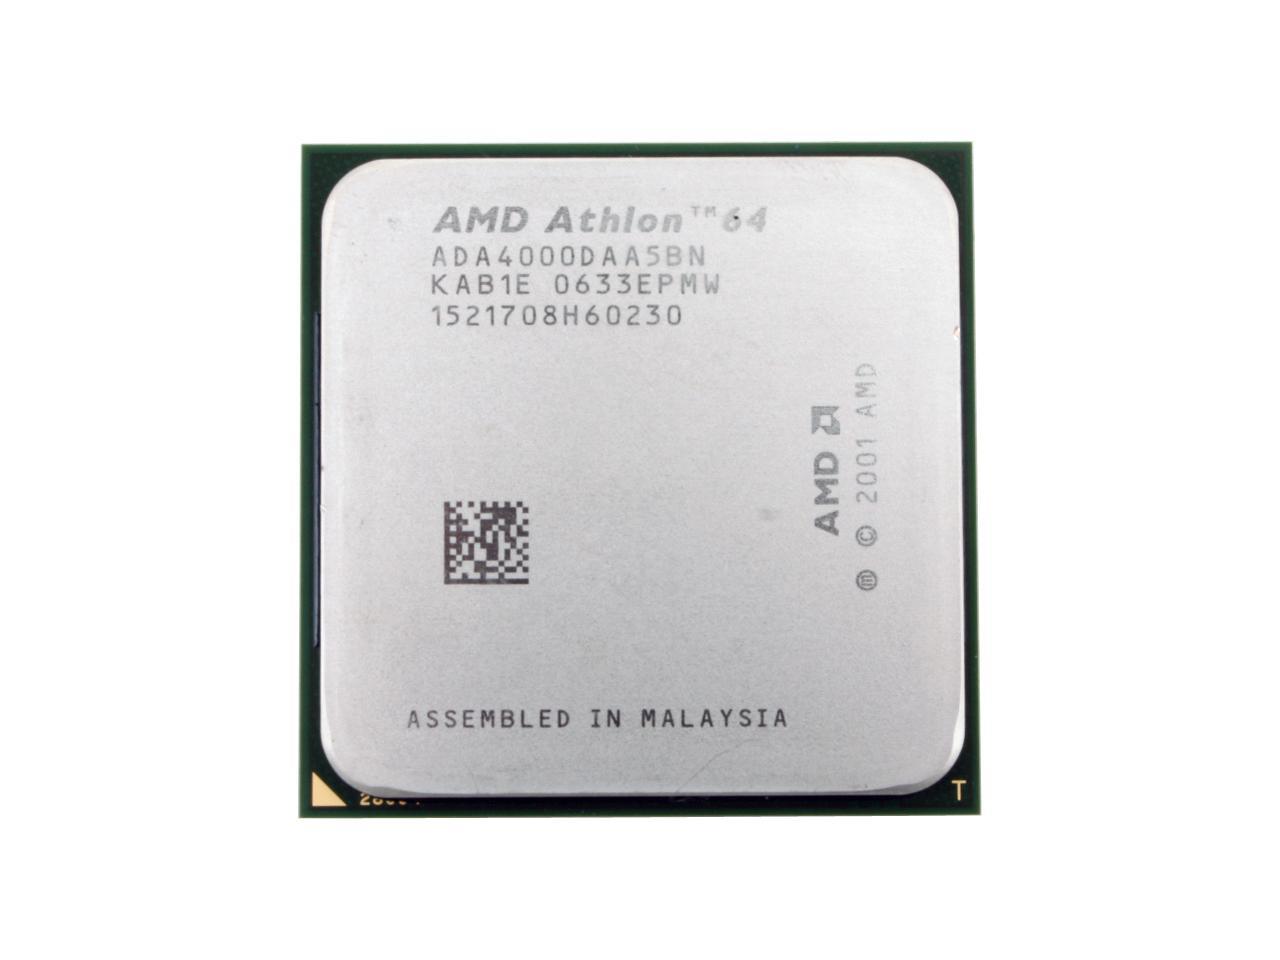 Amd athlon 64 4400. Socket 939 Athlon 64 4400+. Процессор AMD Athlon 64 x2 4400+ Toledo. Процессор AMD Athlon 64 4000+ San Diego. Сокет AMD Athlon 64 x2 Dual Core 4400+.